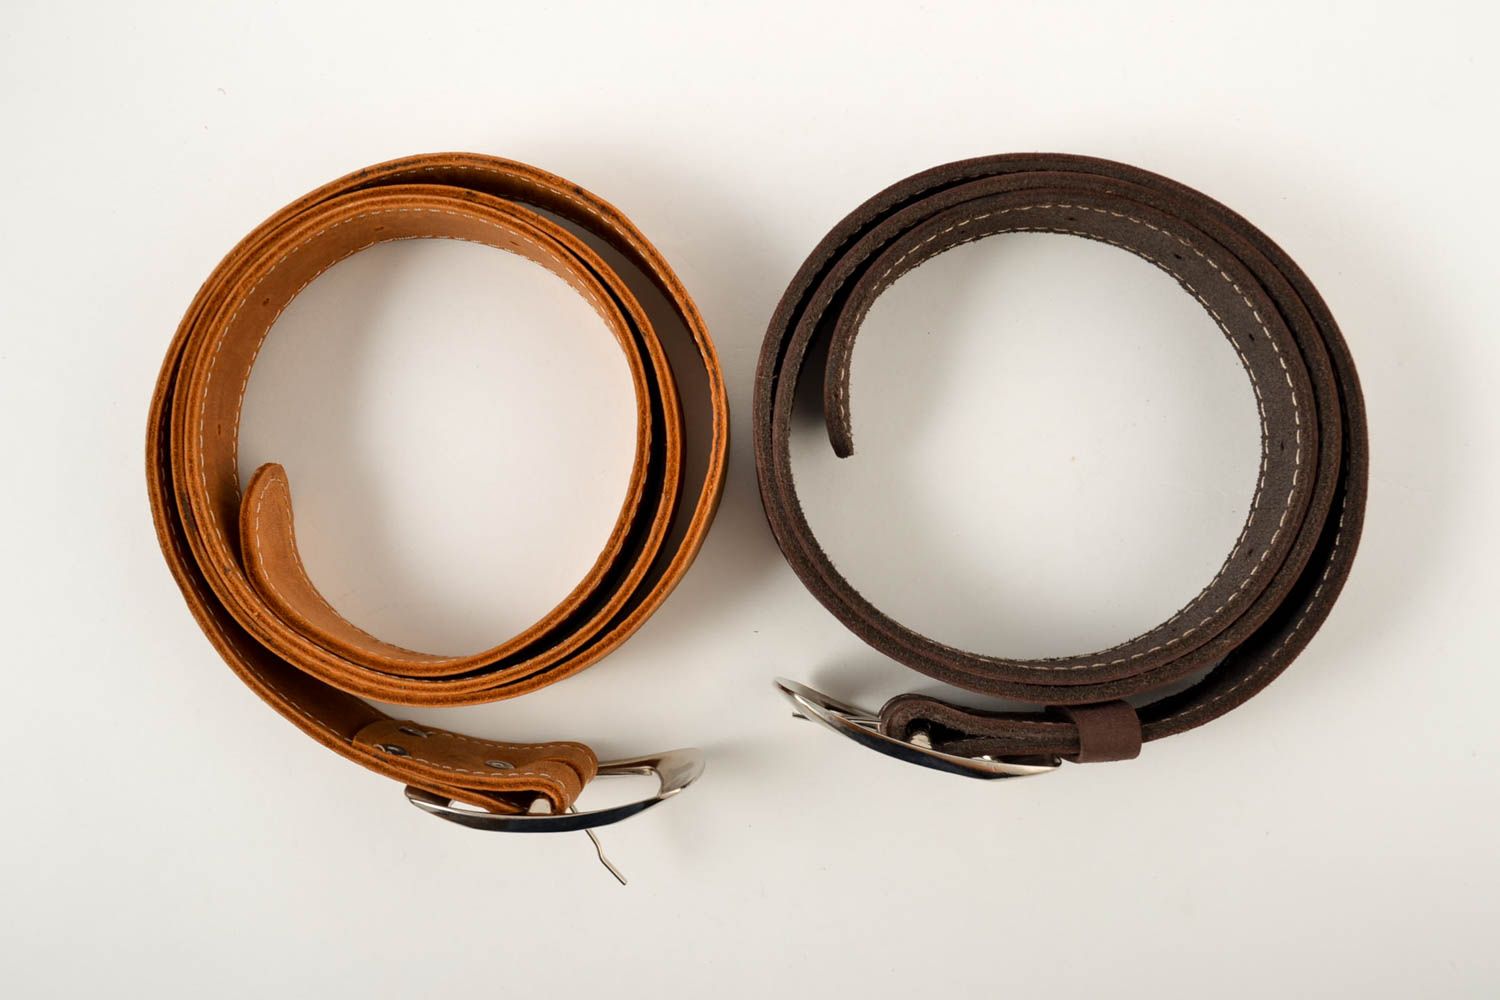 Handmade Herren Gürtel in Braun Accessoires für Männer Gürtel aus Leder 2 Stück foto 2